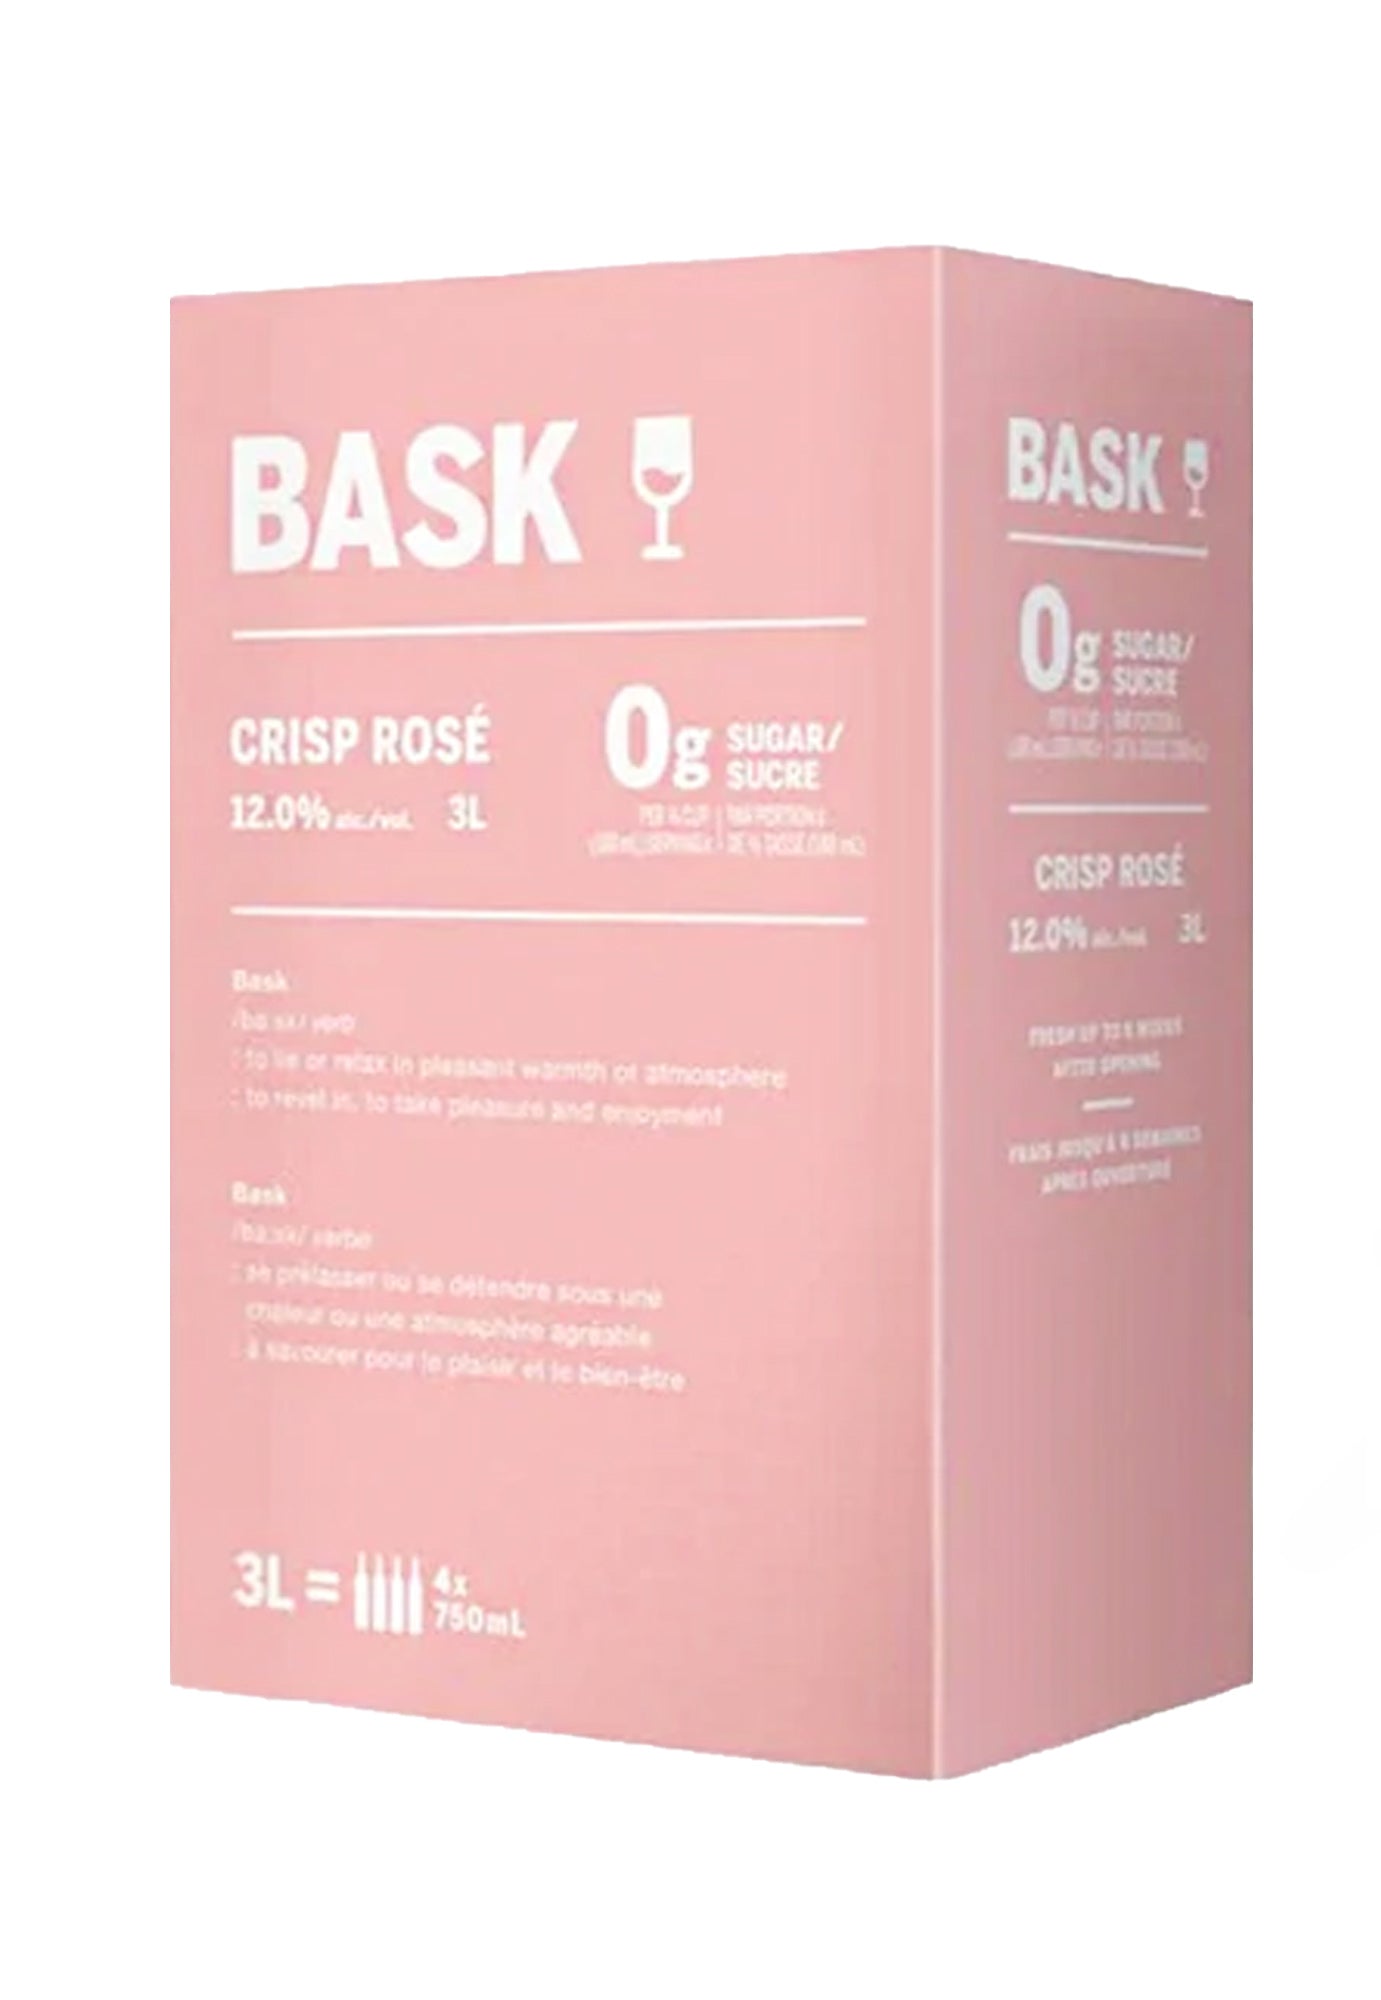 Bask Crisp Rose (NV) - 3 Litre Box